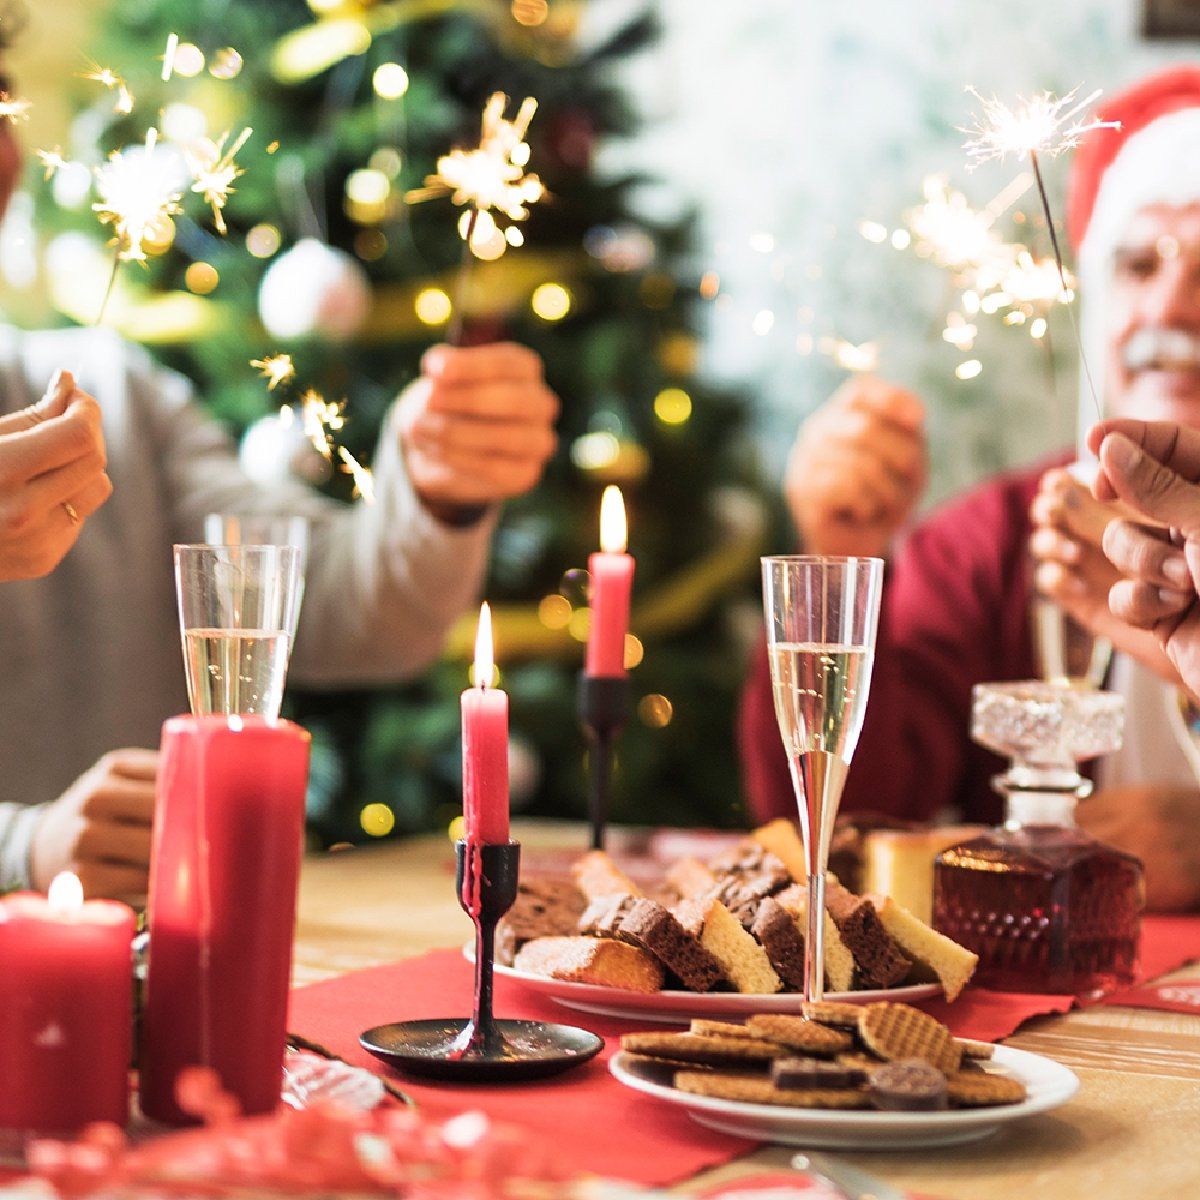 Los expertos avisan: estos son los temas de conversación que hay que evitar en la cena de Navidad